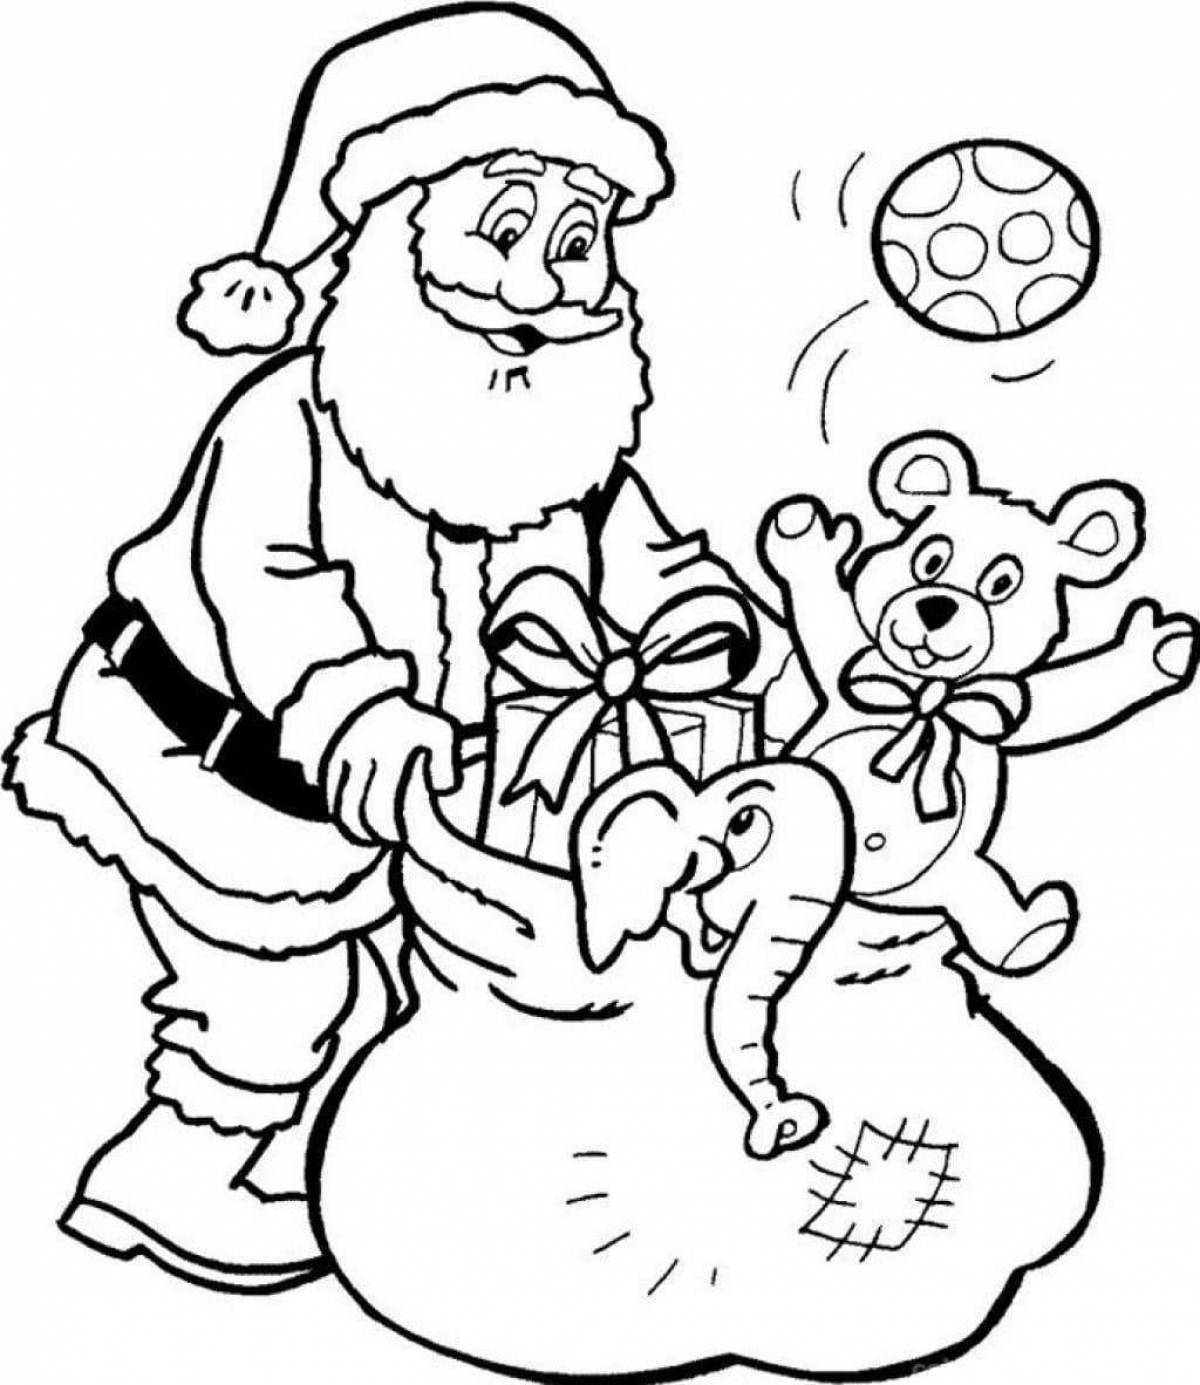 Fun coloring santa claus for kids